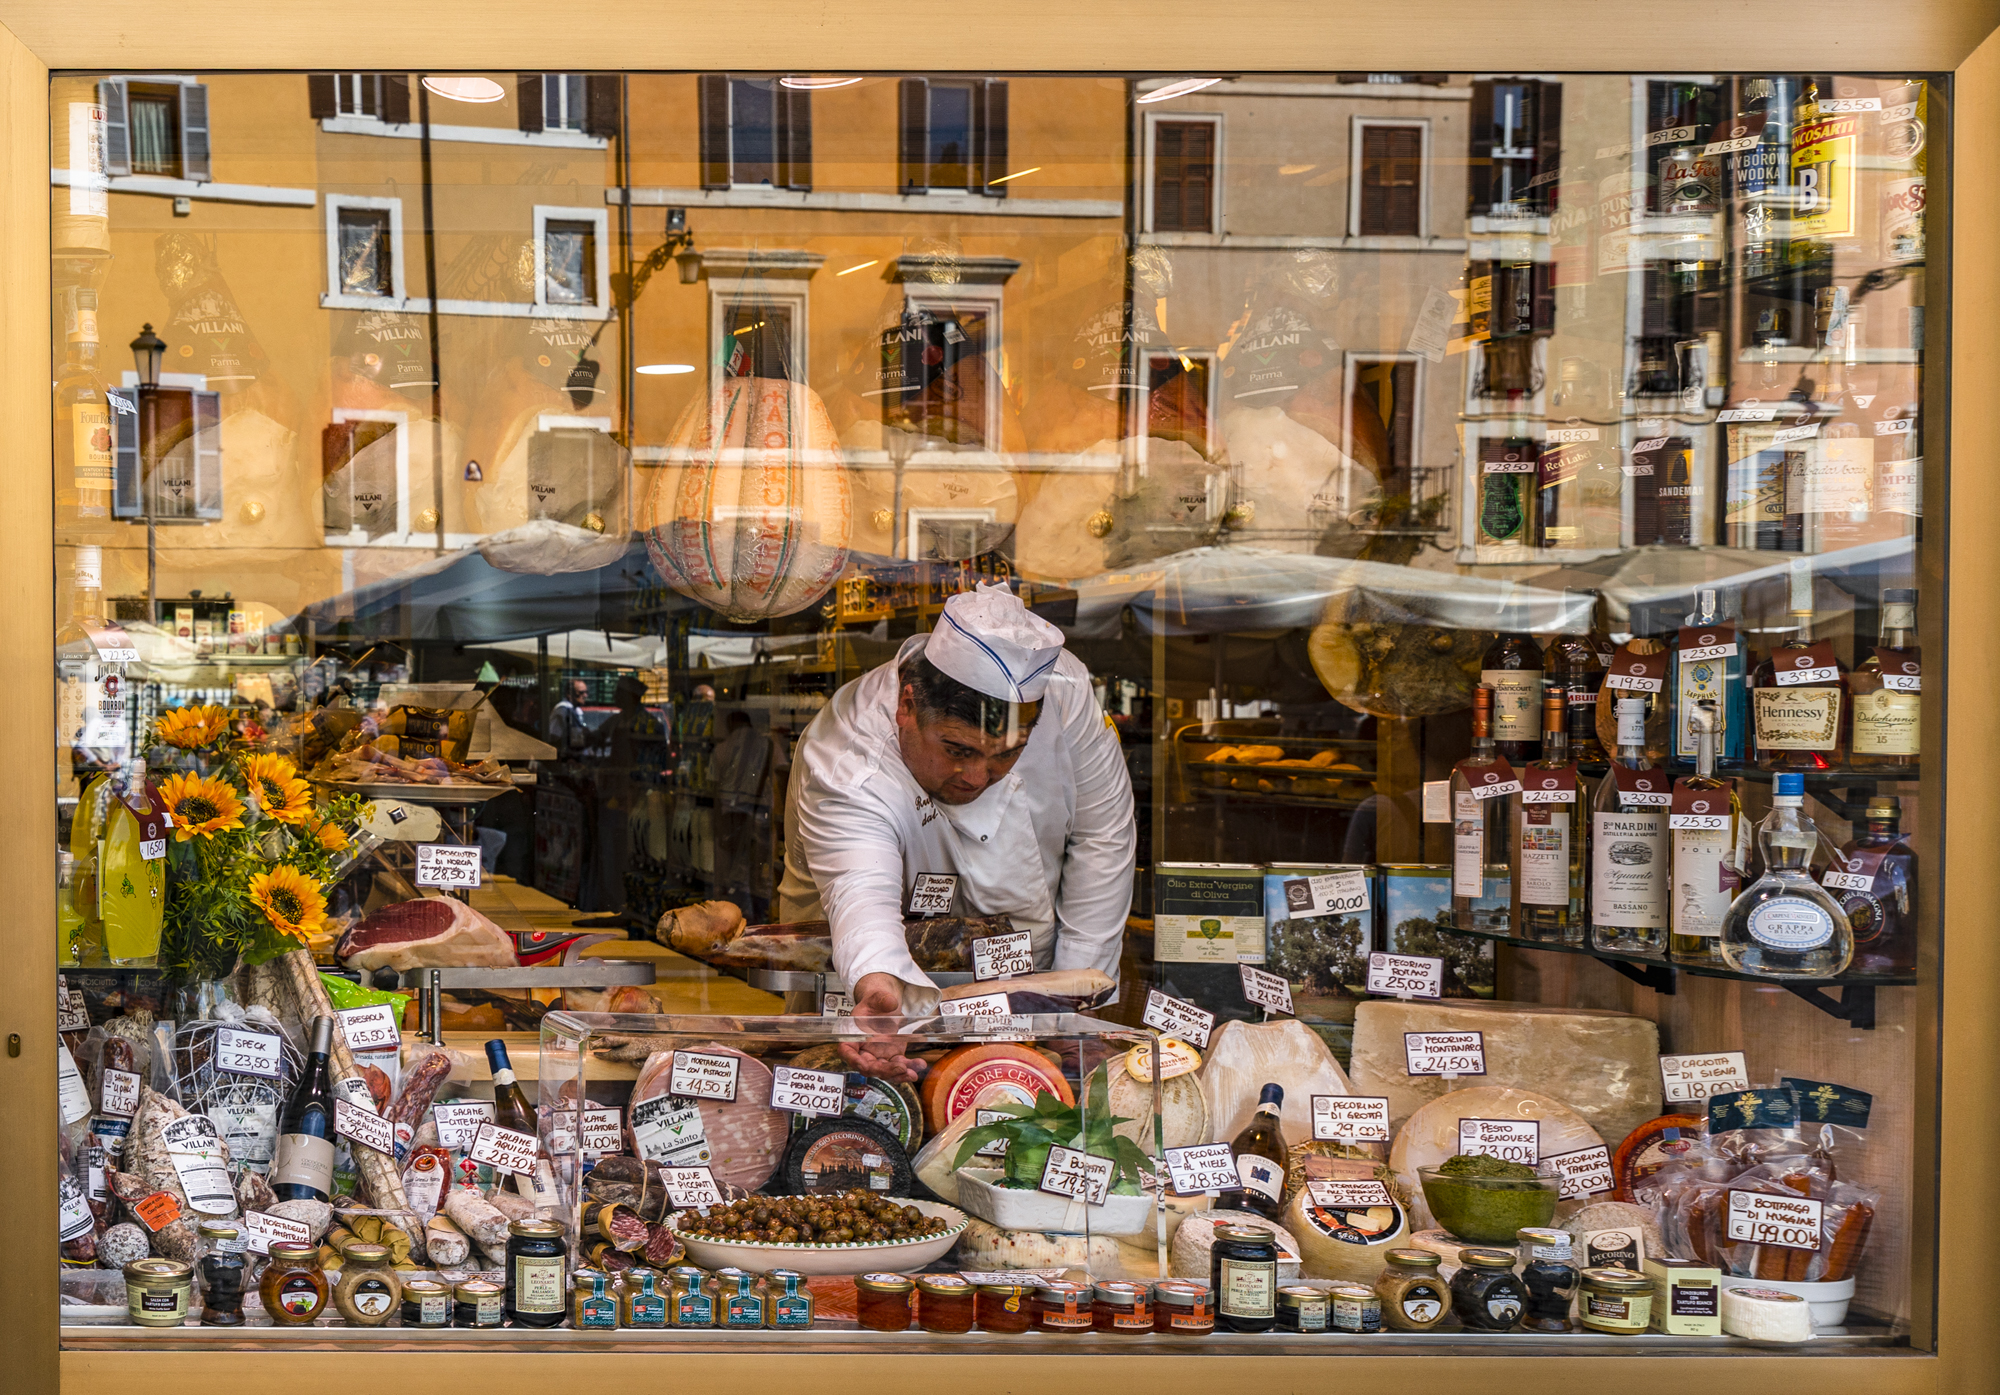 Delicatessen window, Rome